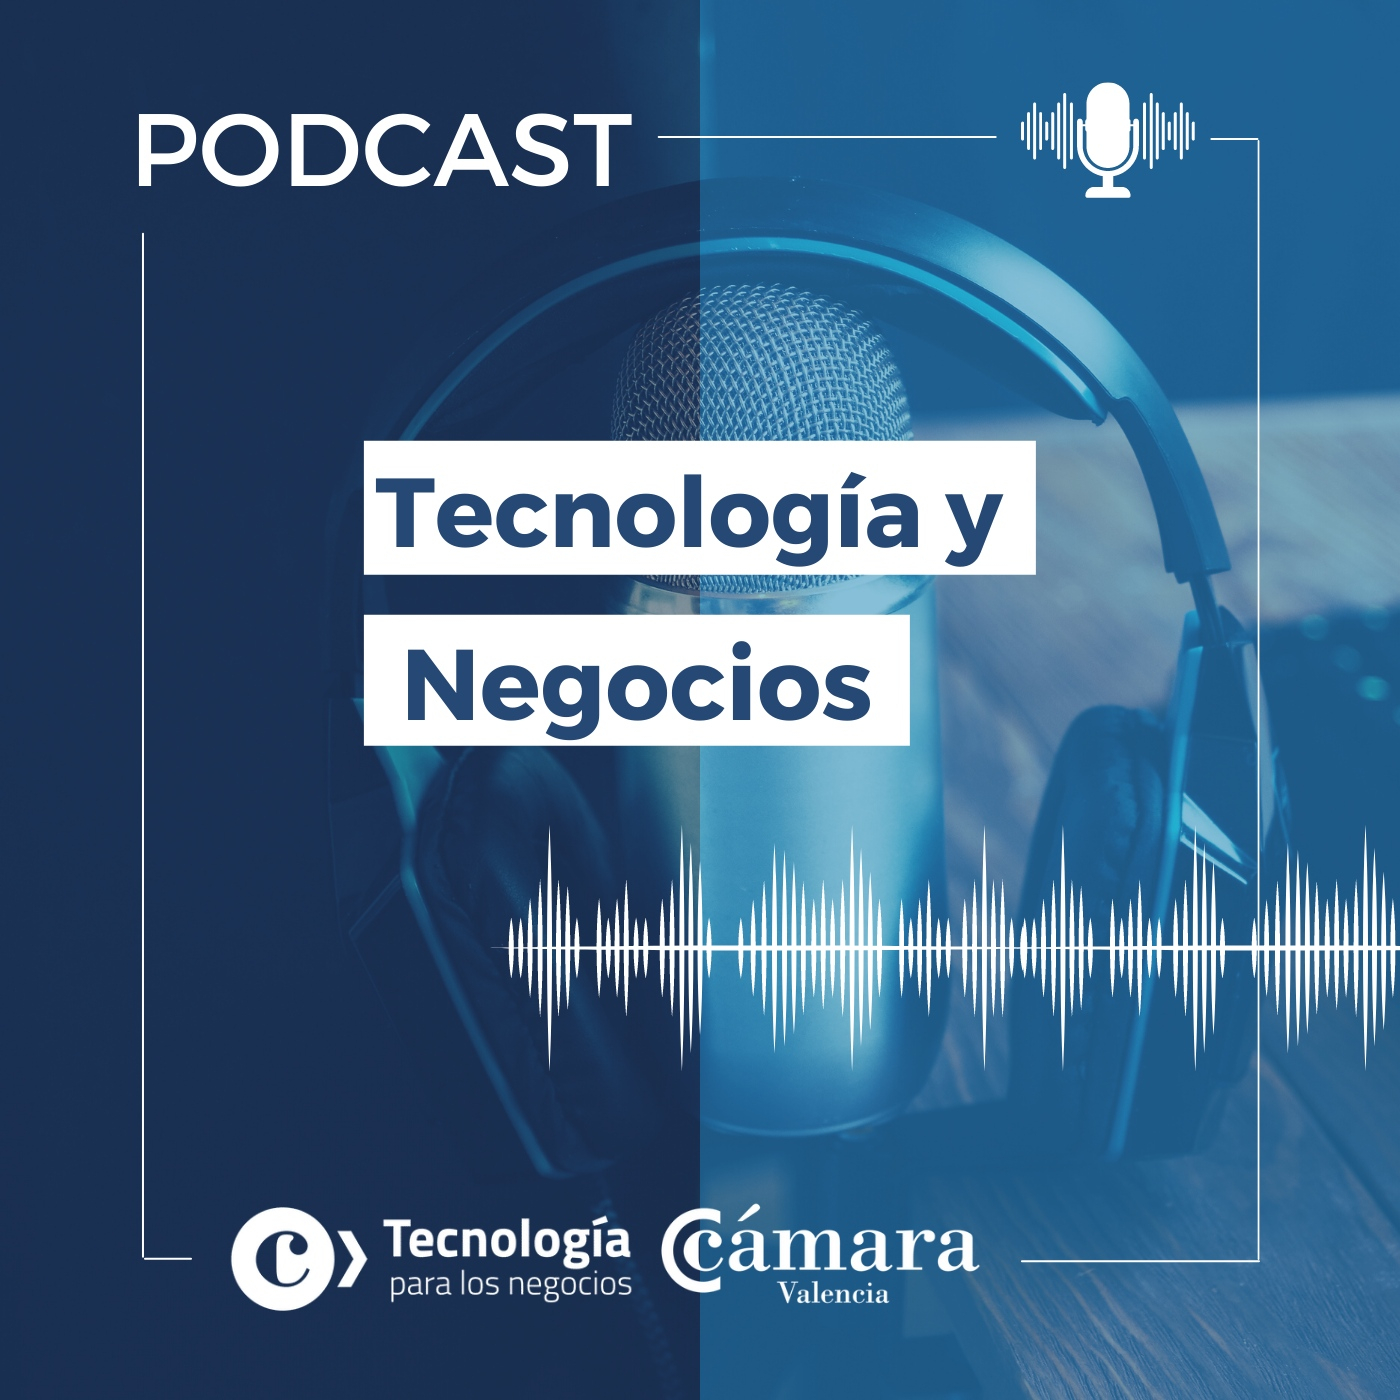 Podcast 3: Producto digital y la nueva digitalización de los negocios. Conocemos El Meu Nebot